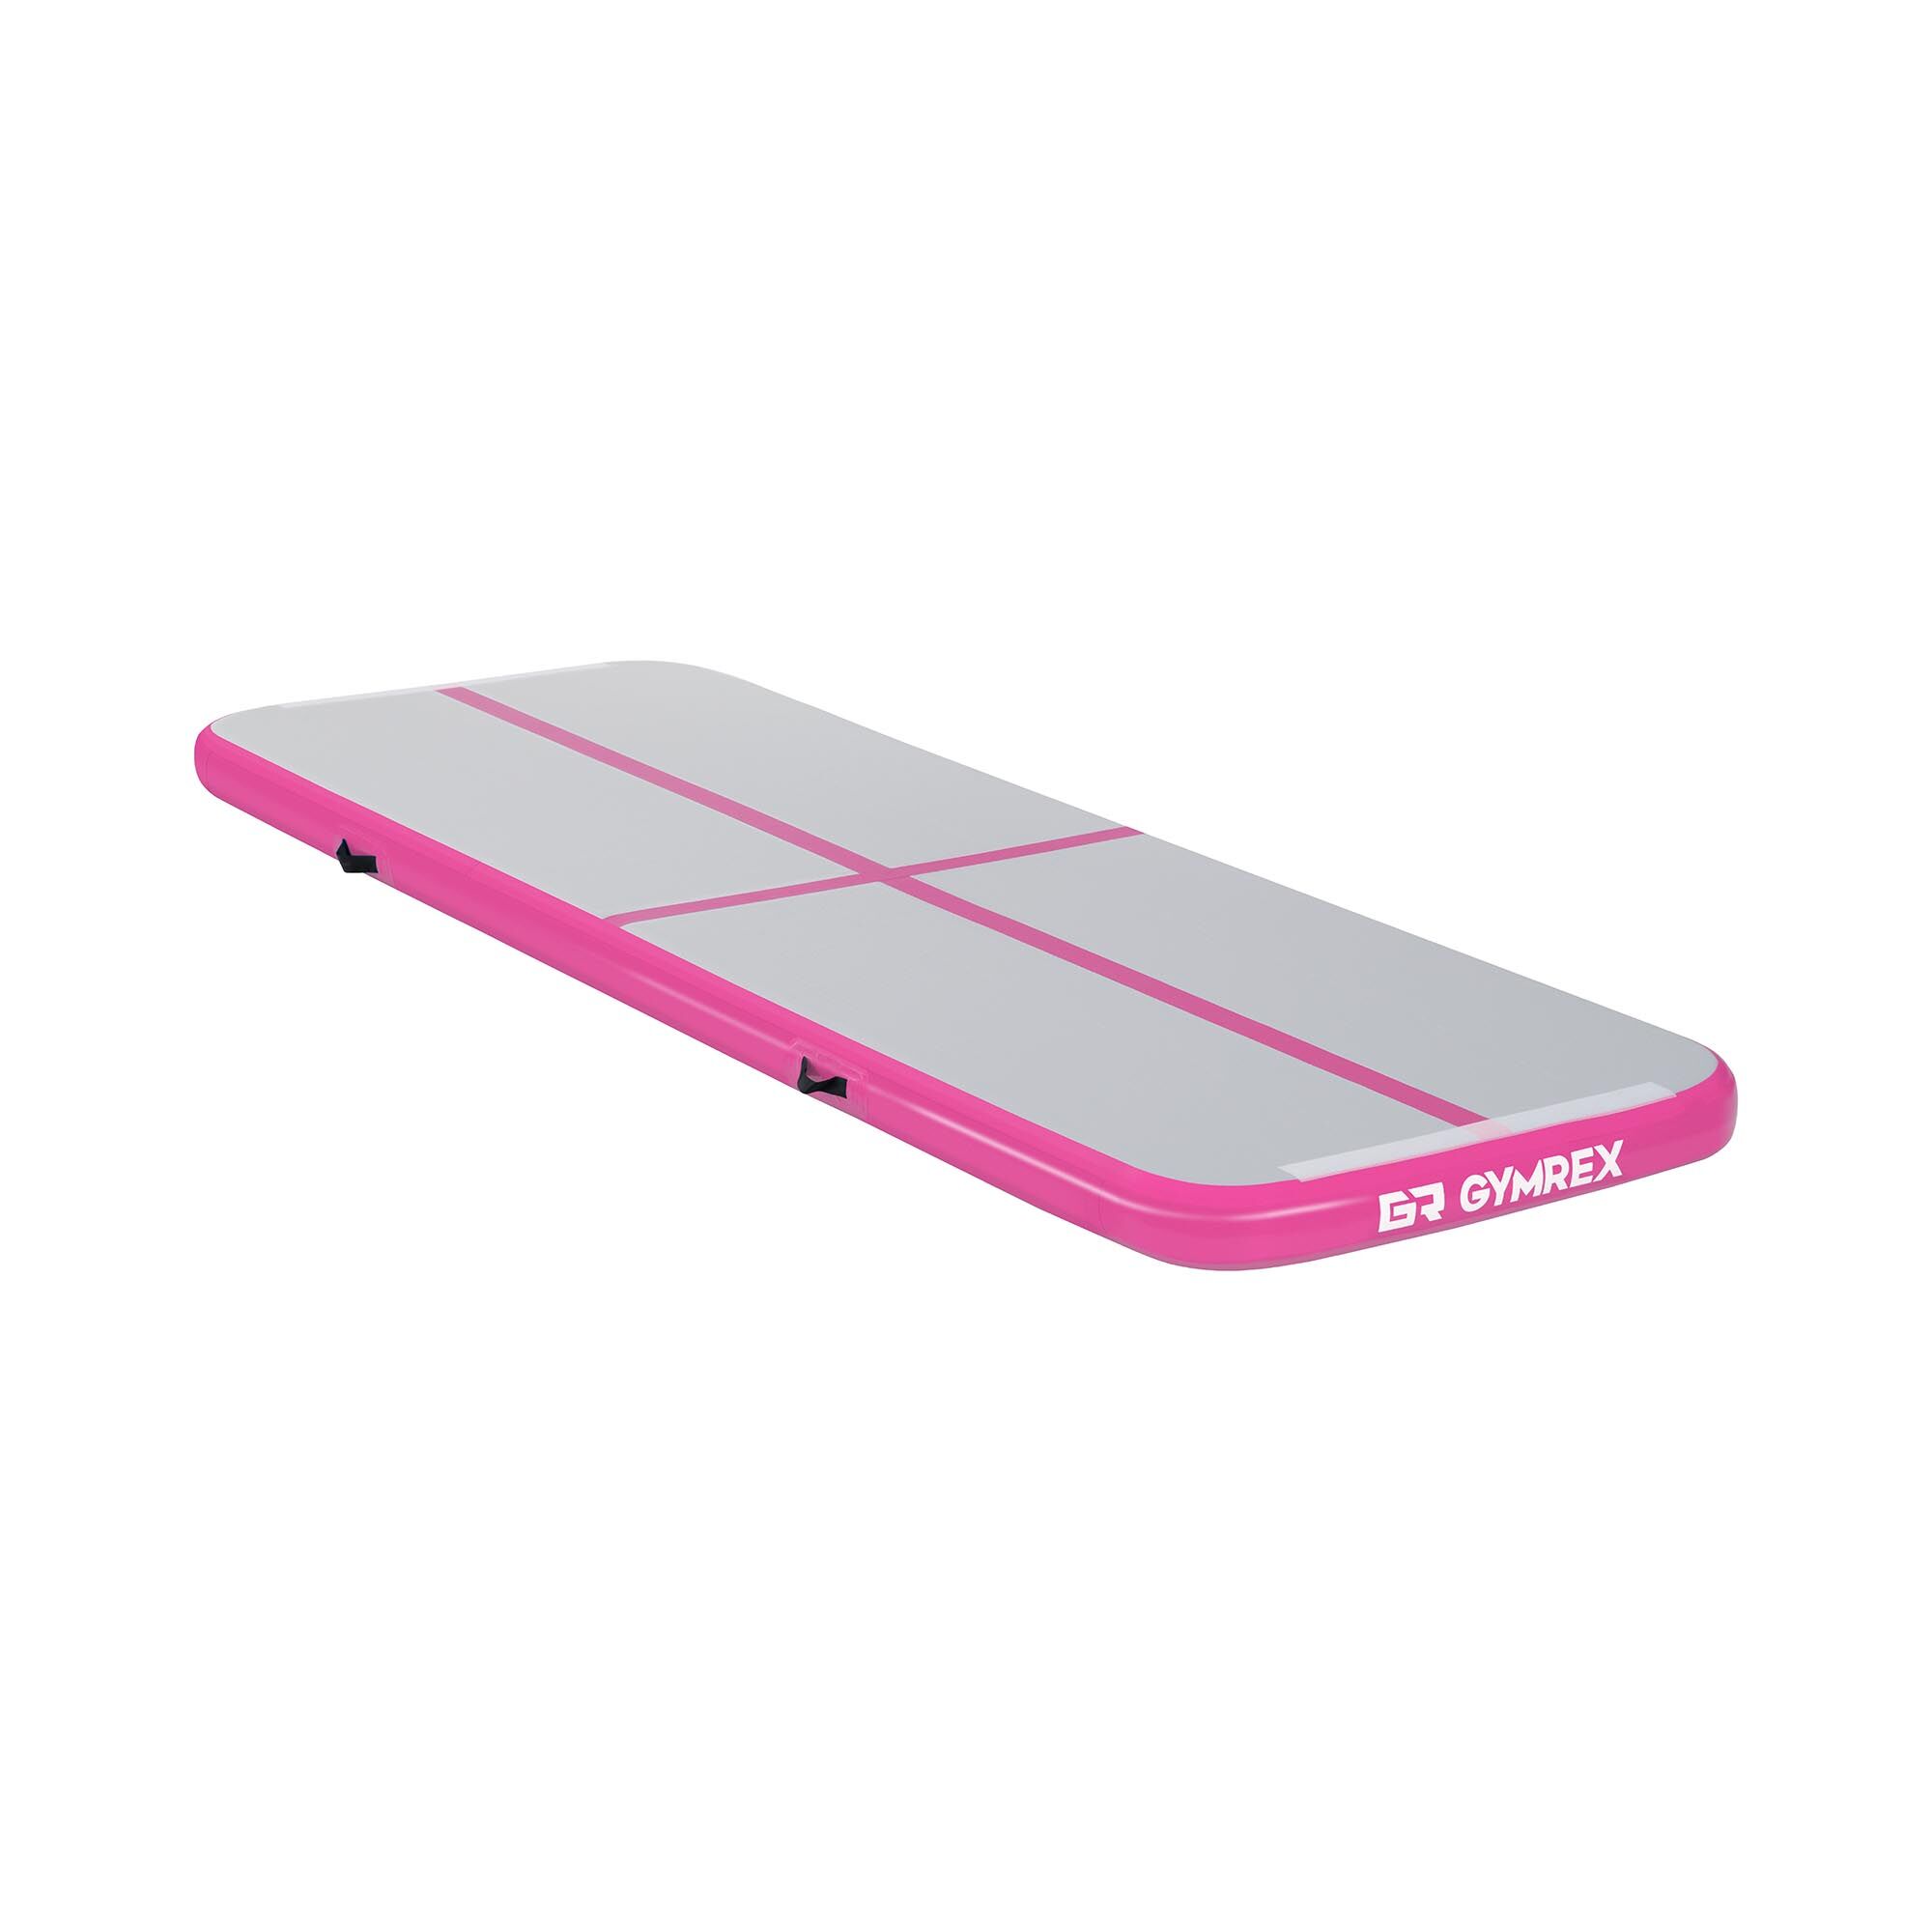 Gymrex Aufblasbare Turnmatte - Airtrack - 300 x 100 x 10 cm - 150 kg - pink/grau